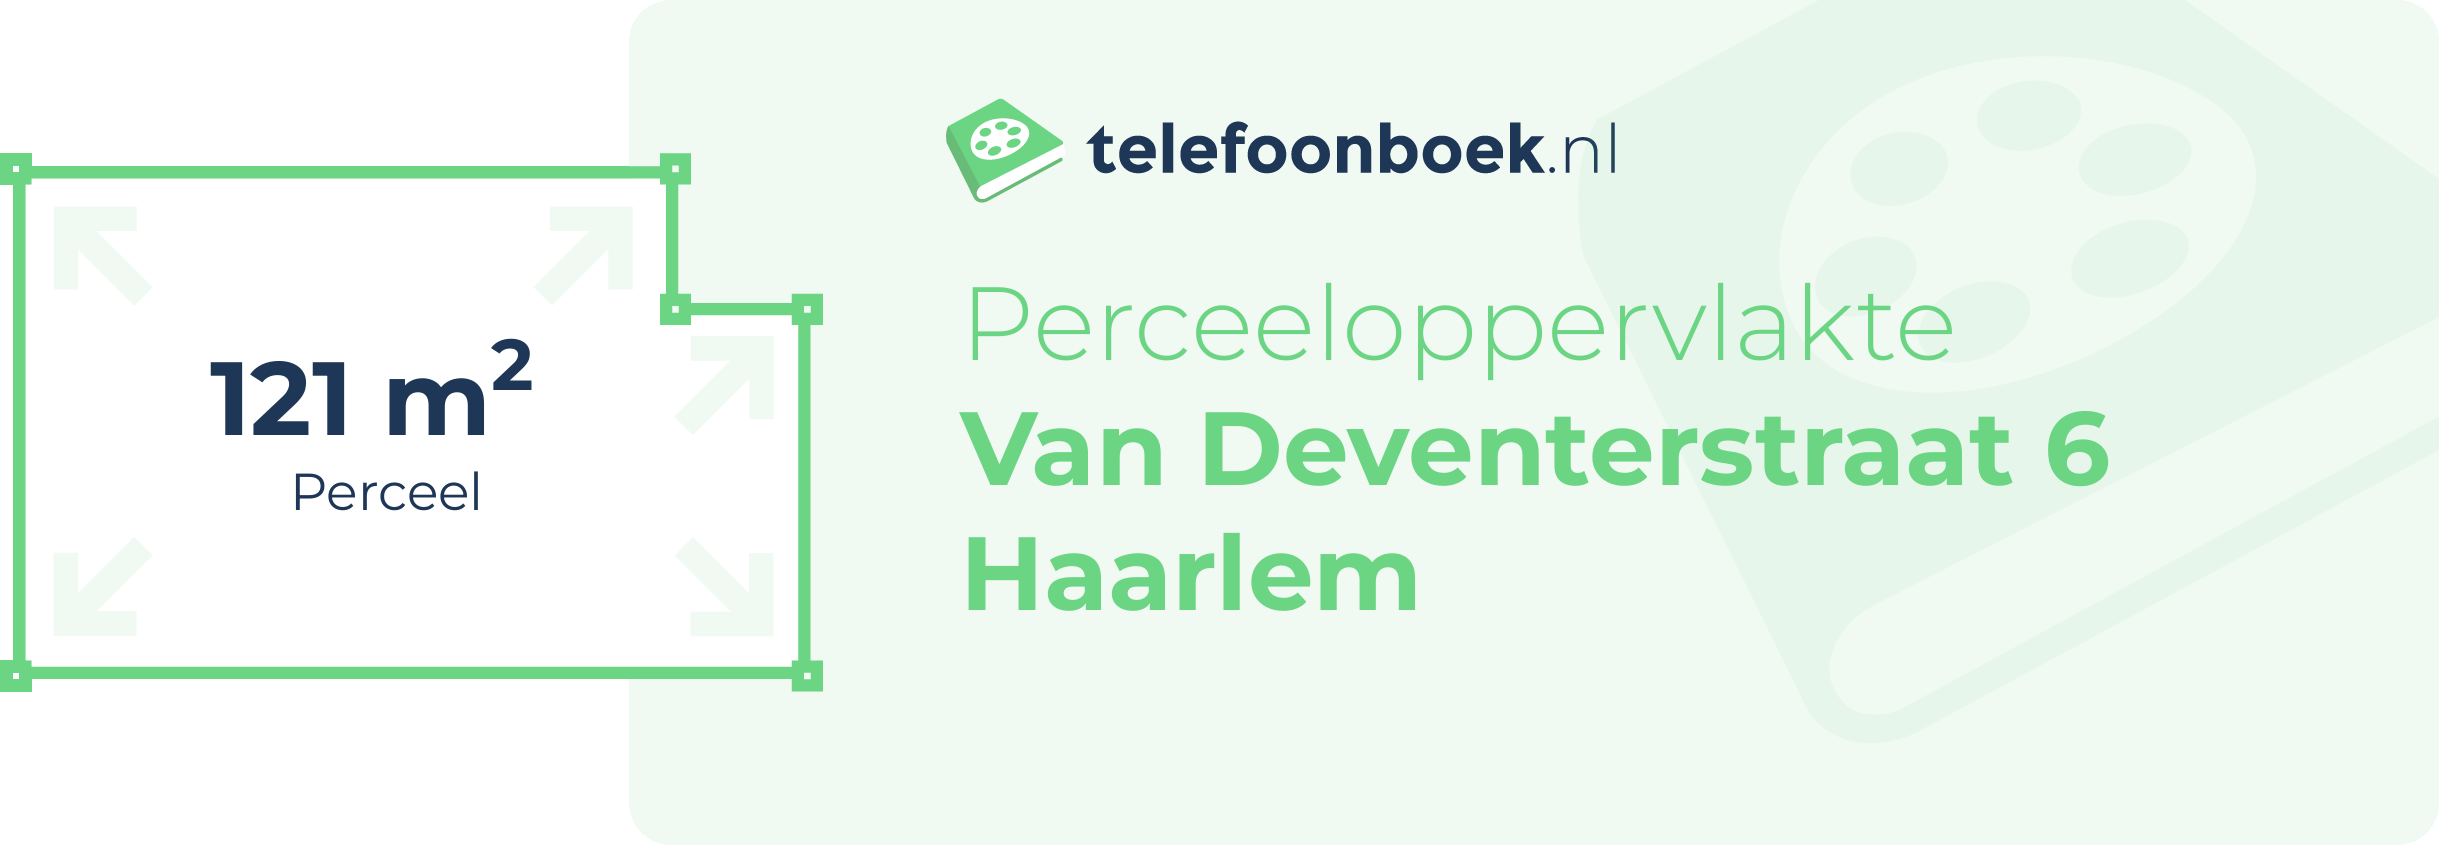 Perceeloppervlakte Van Deventerstraat 6 Haarlem